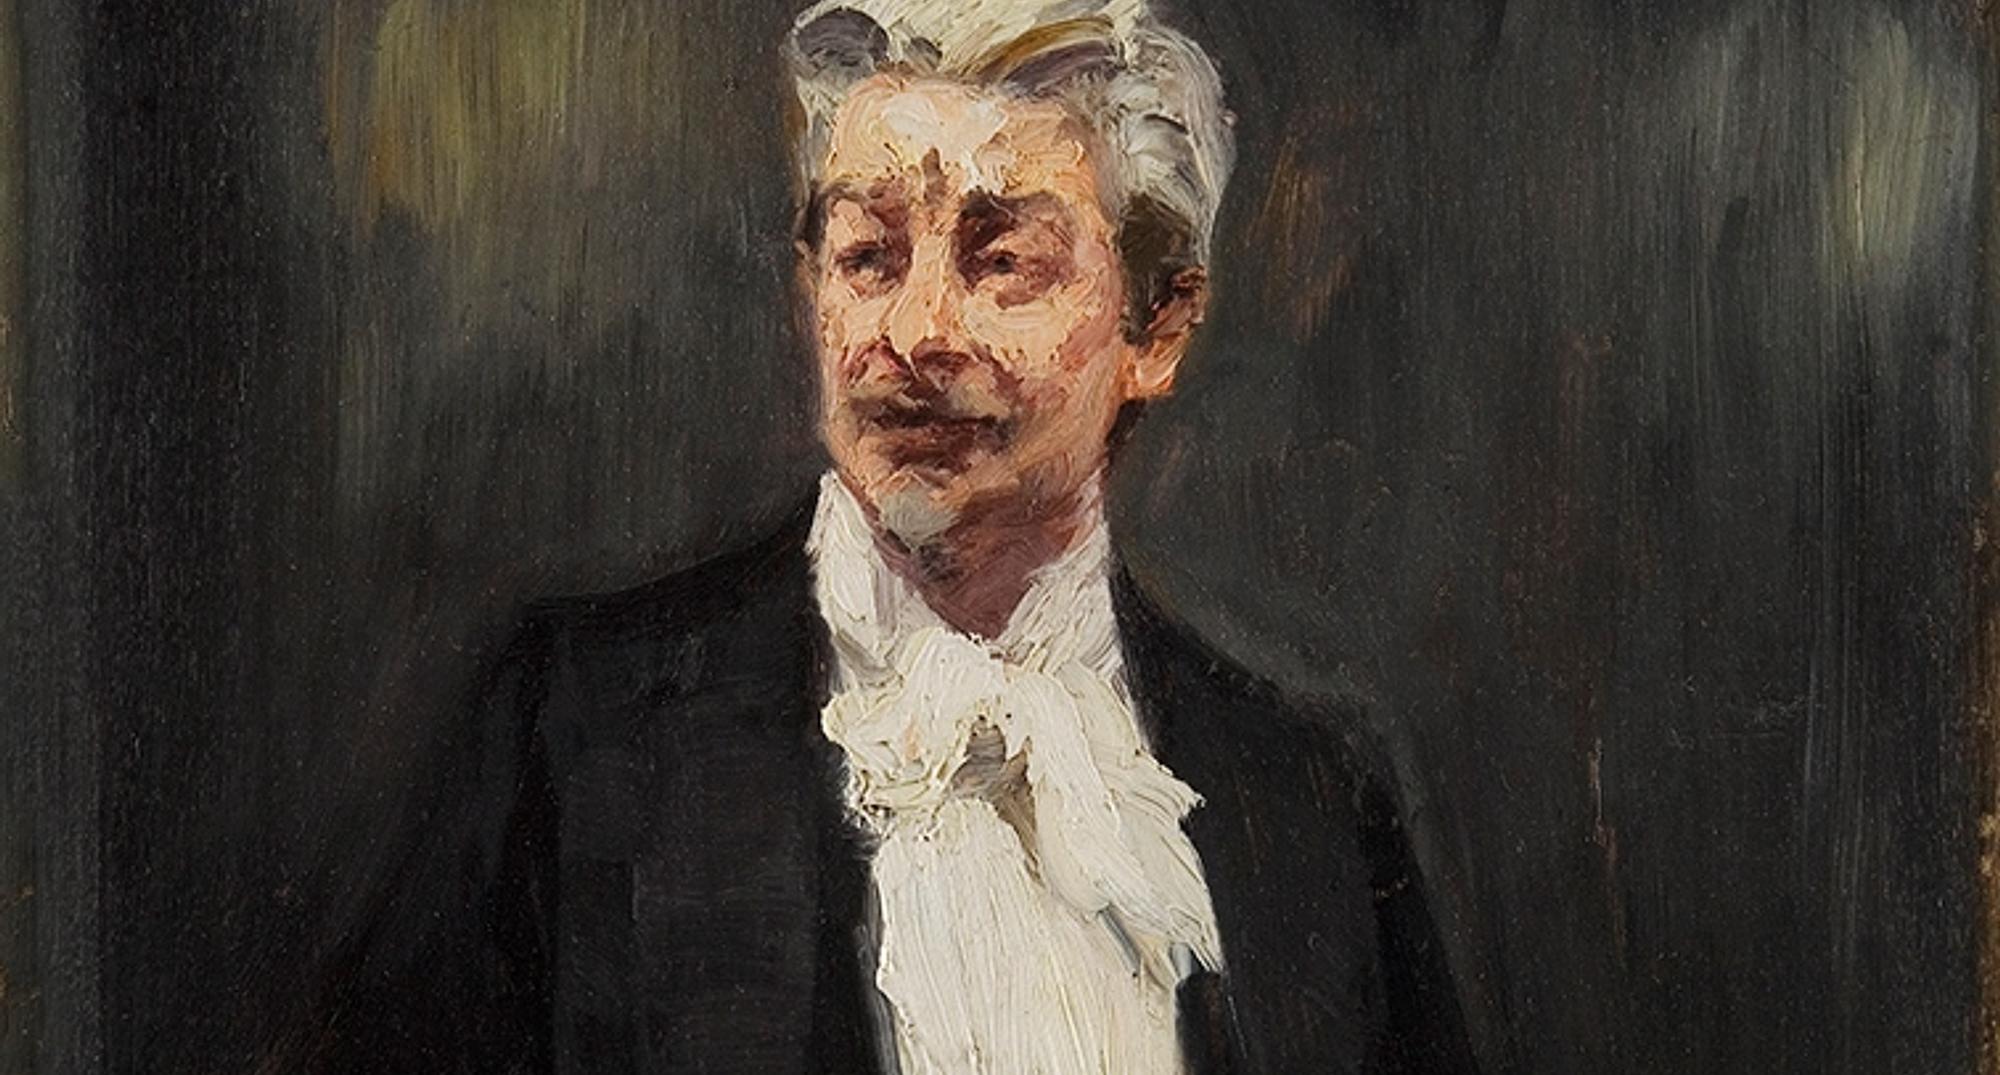 Krøyer brandes maleri beskåret portræt